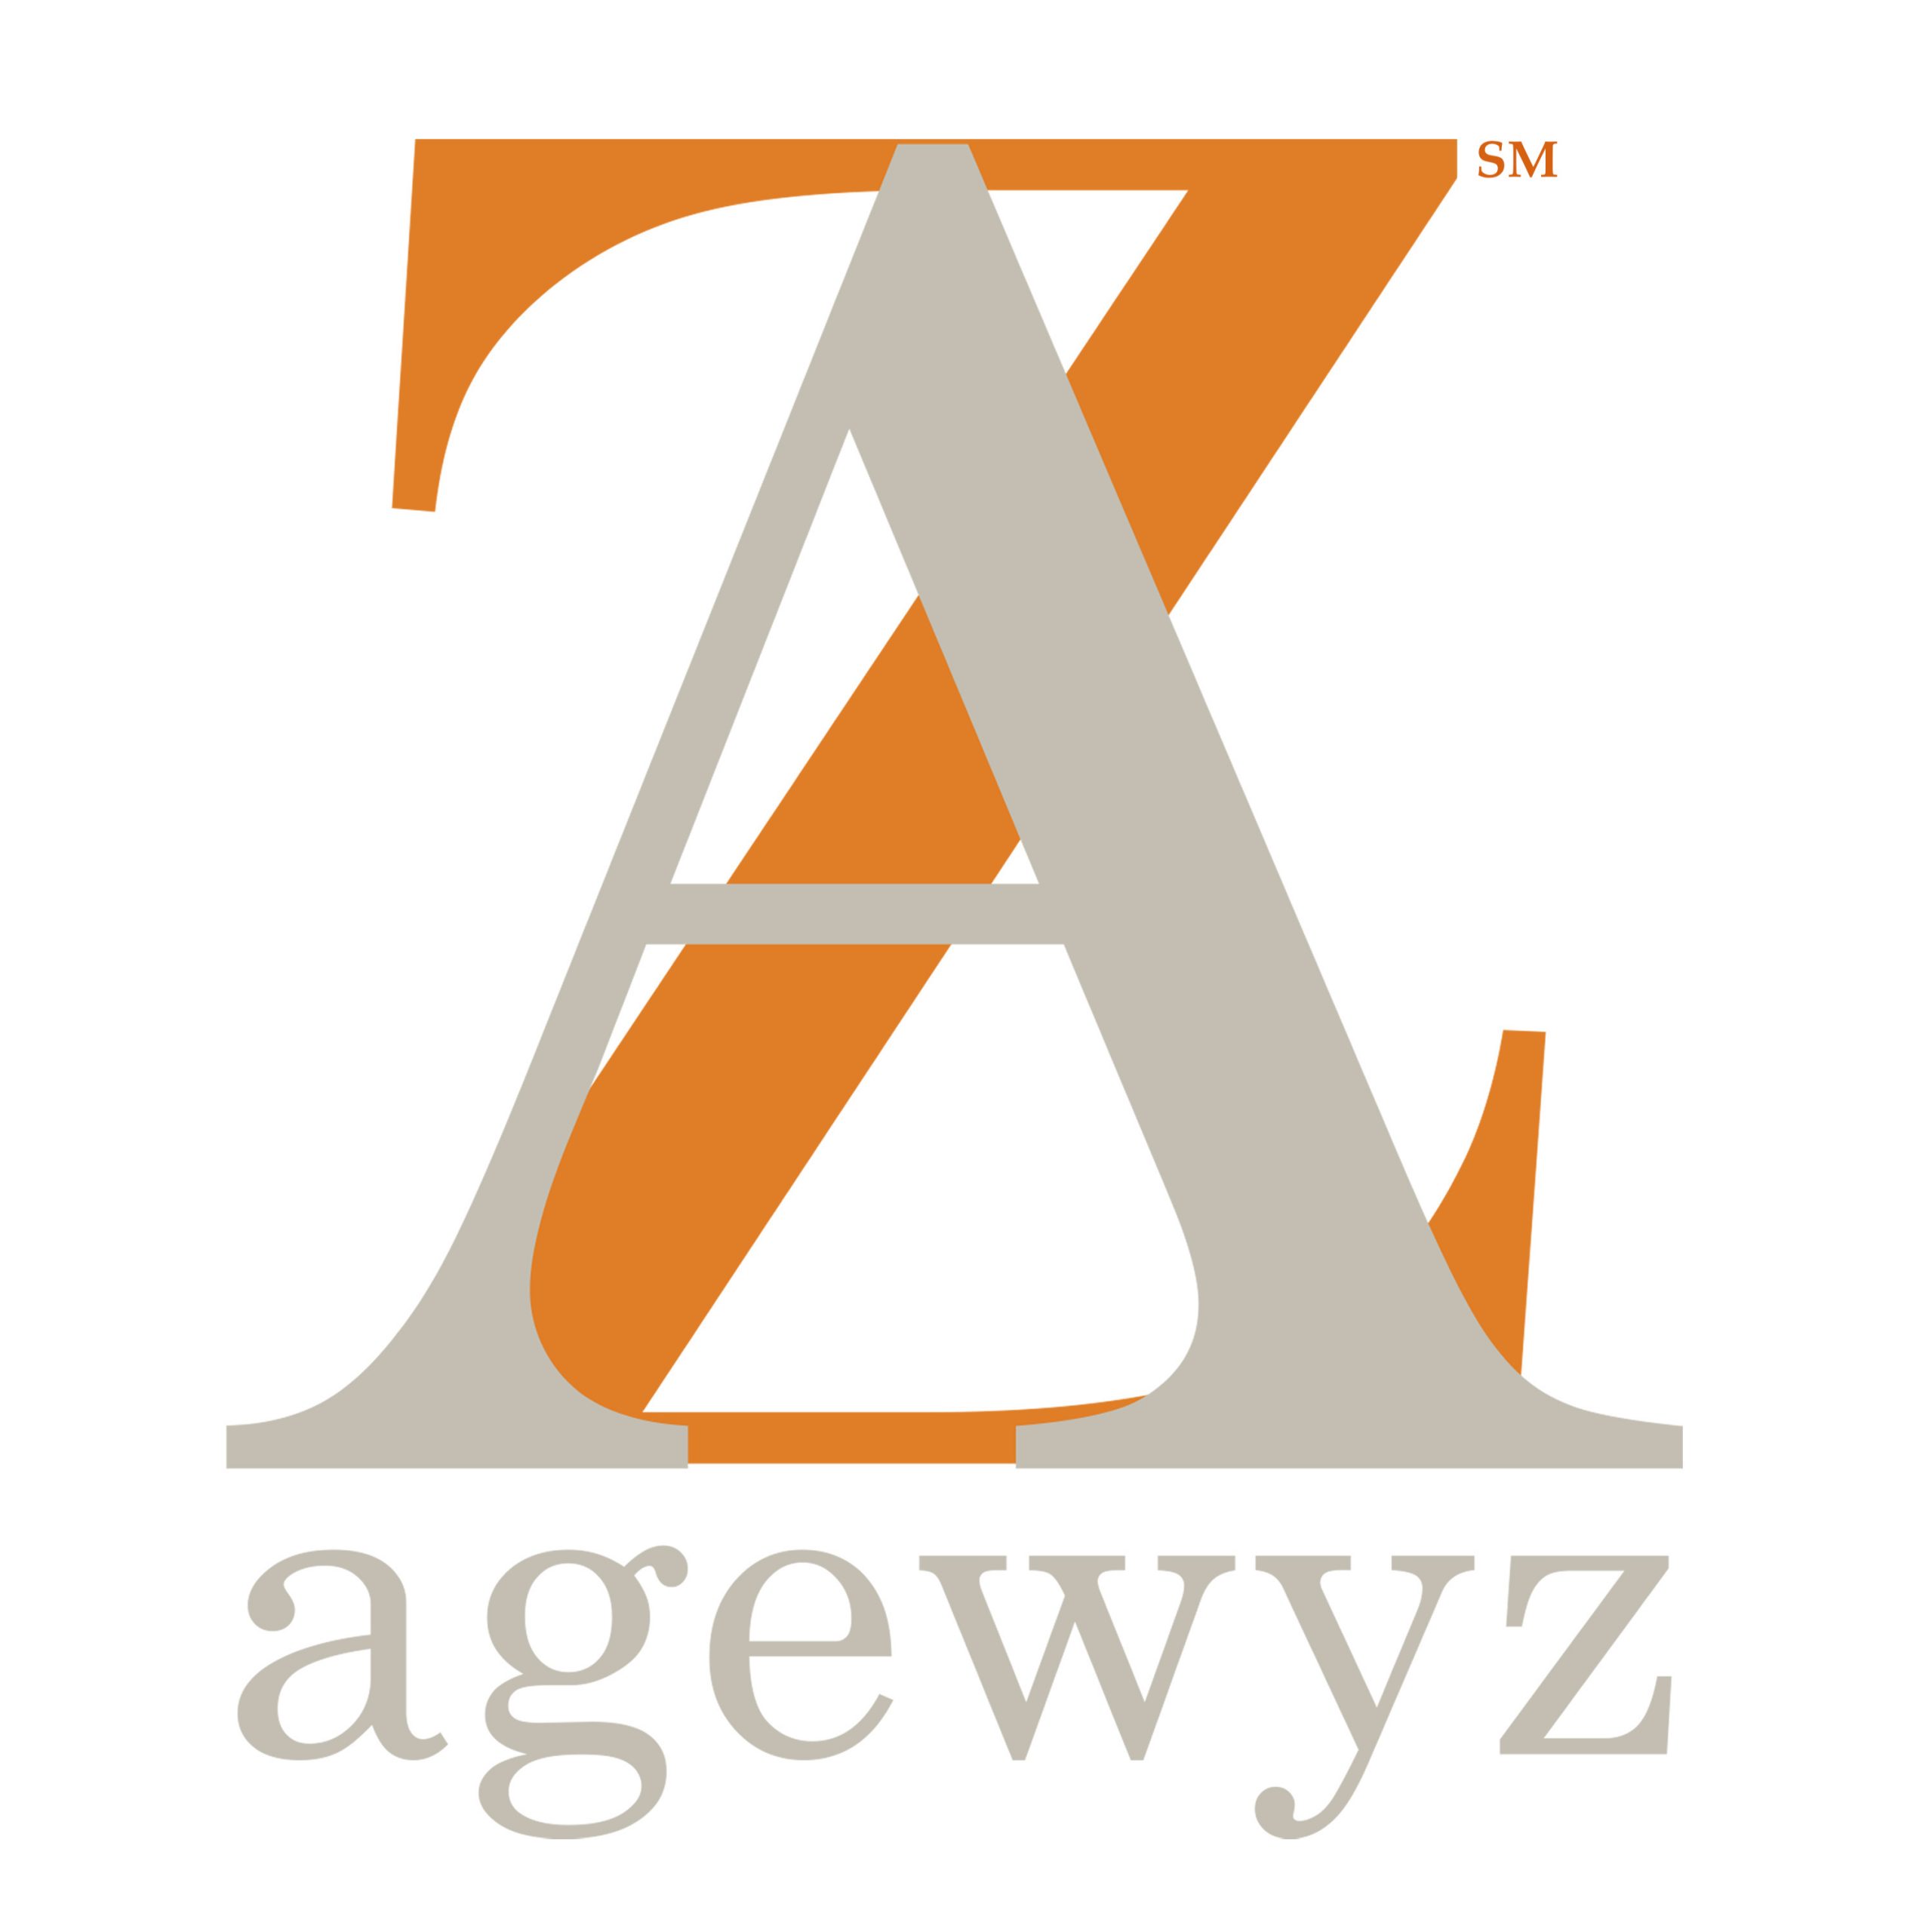 agewyz logo